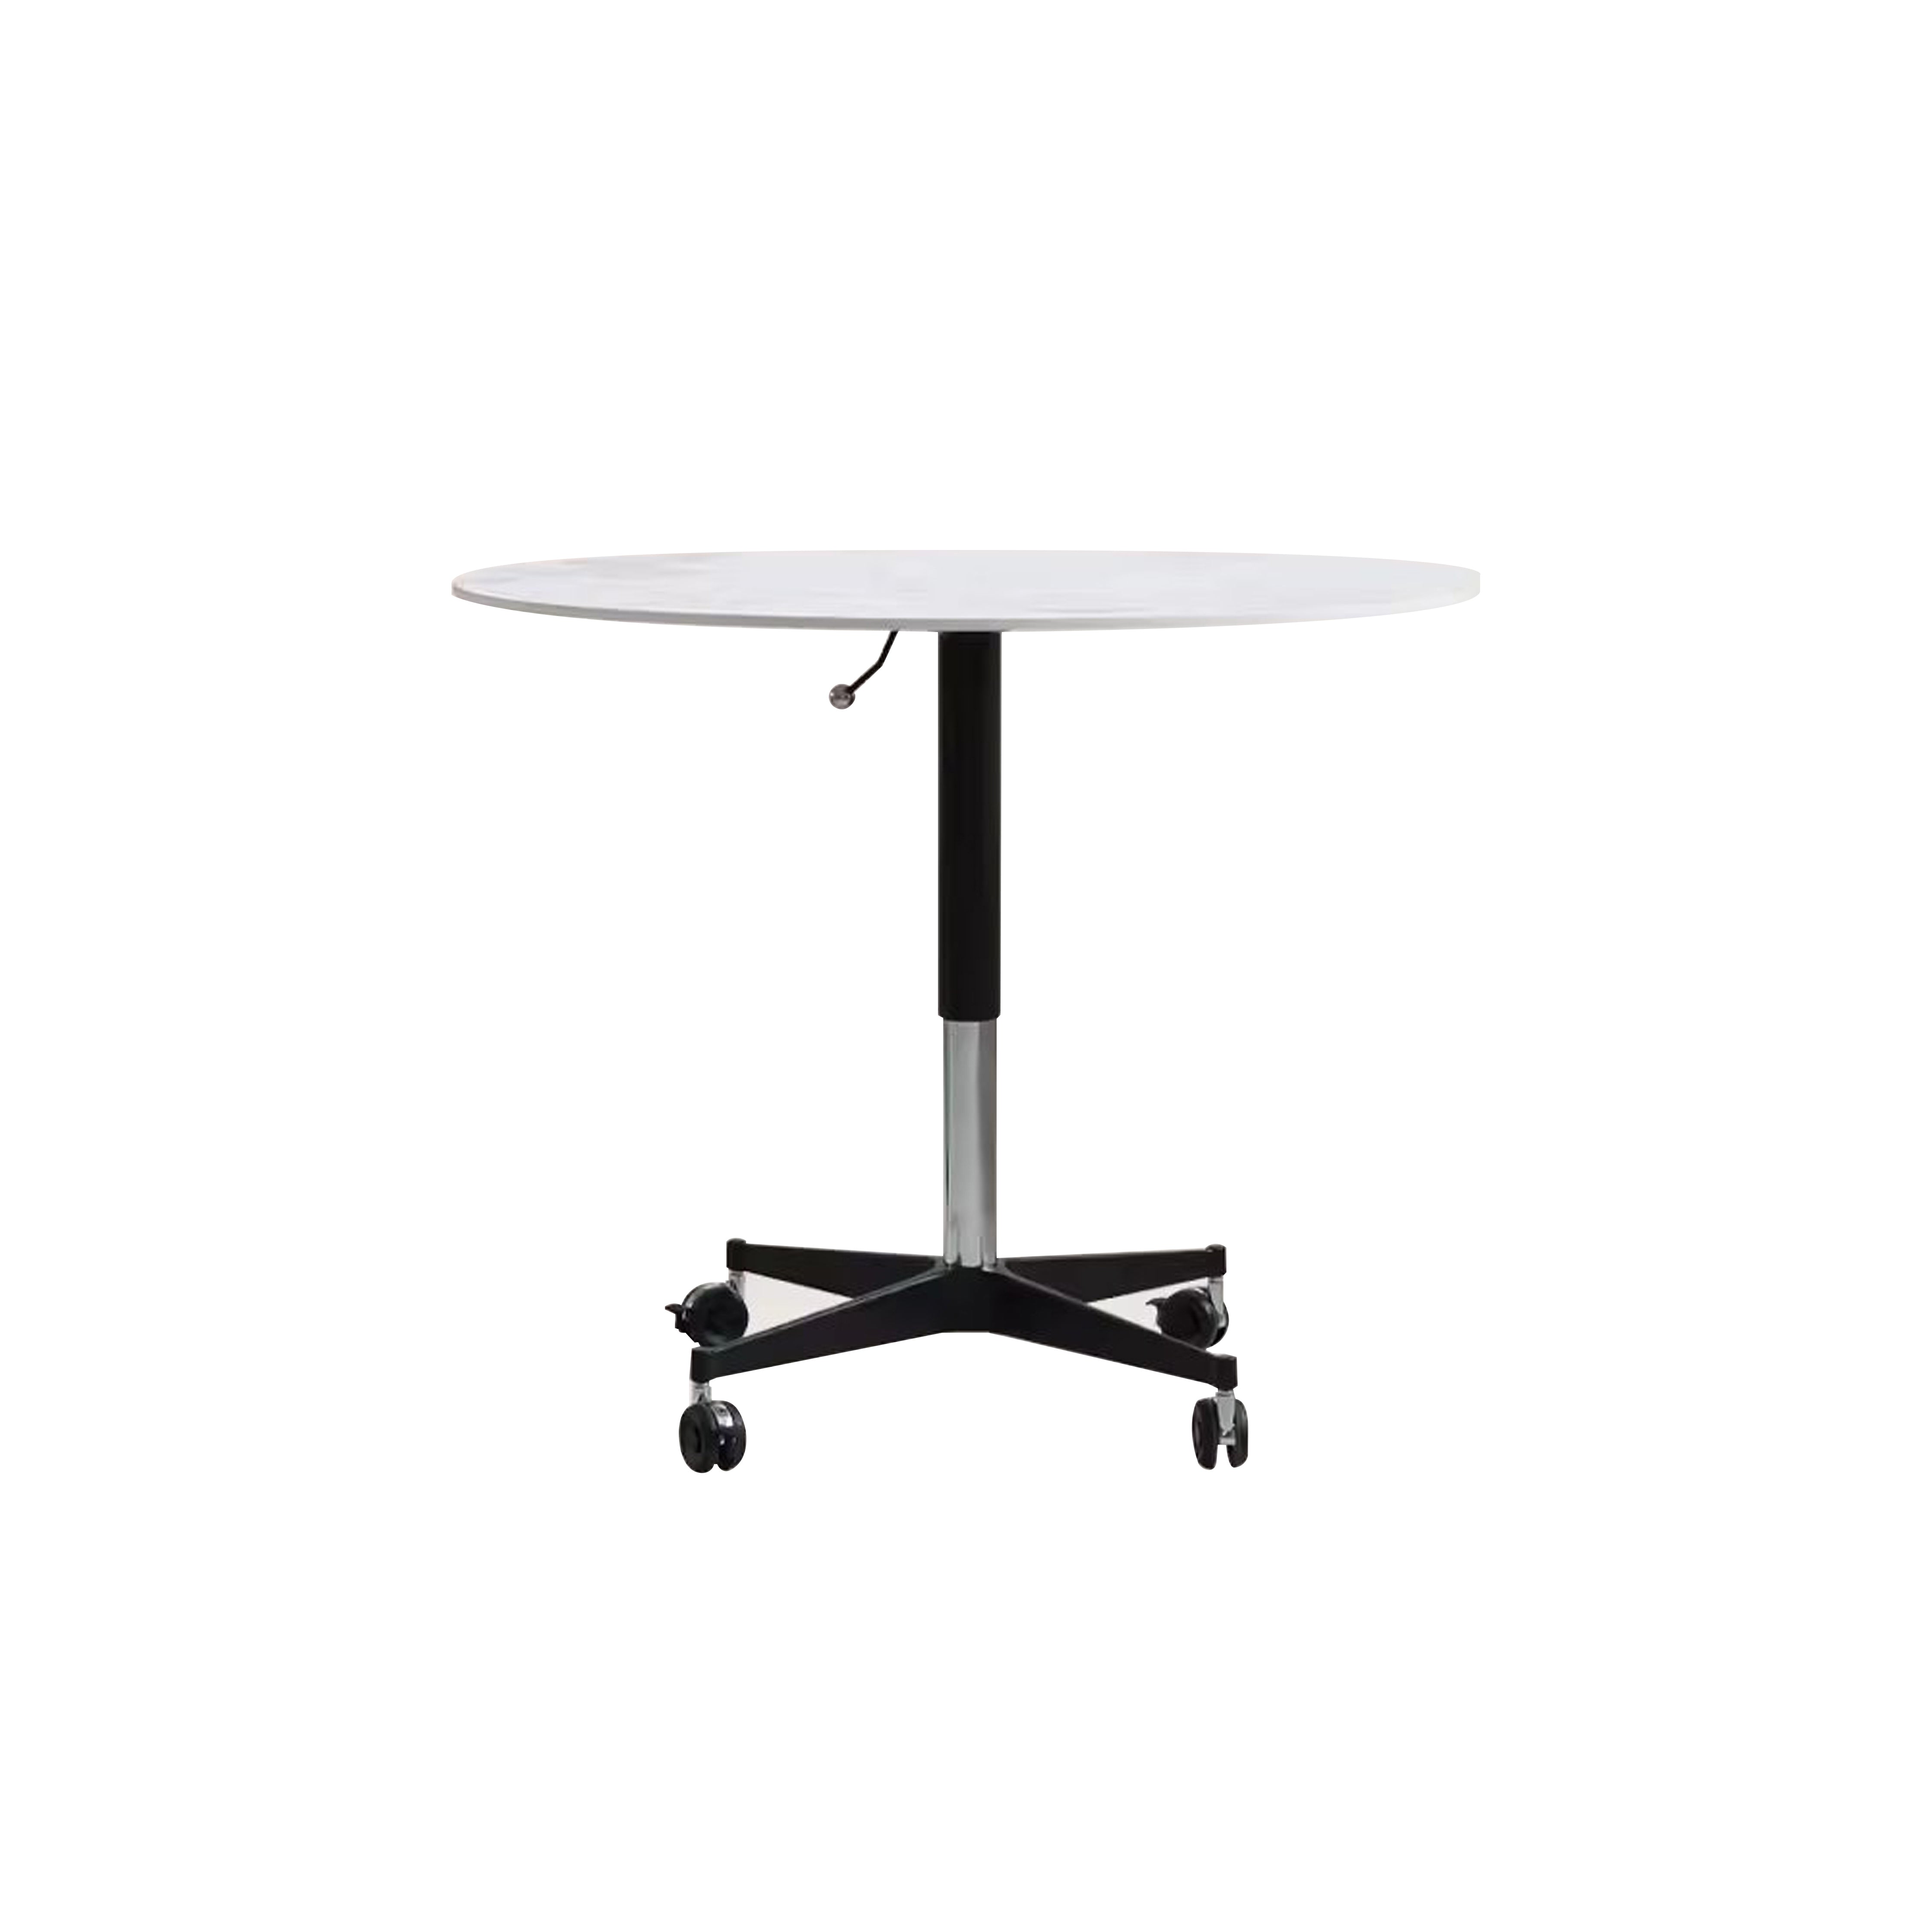 9.0 Sintered Stone Adjustable Table